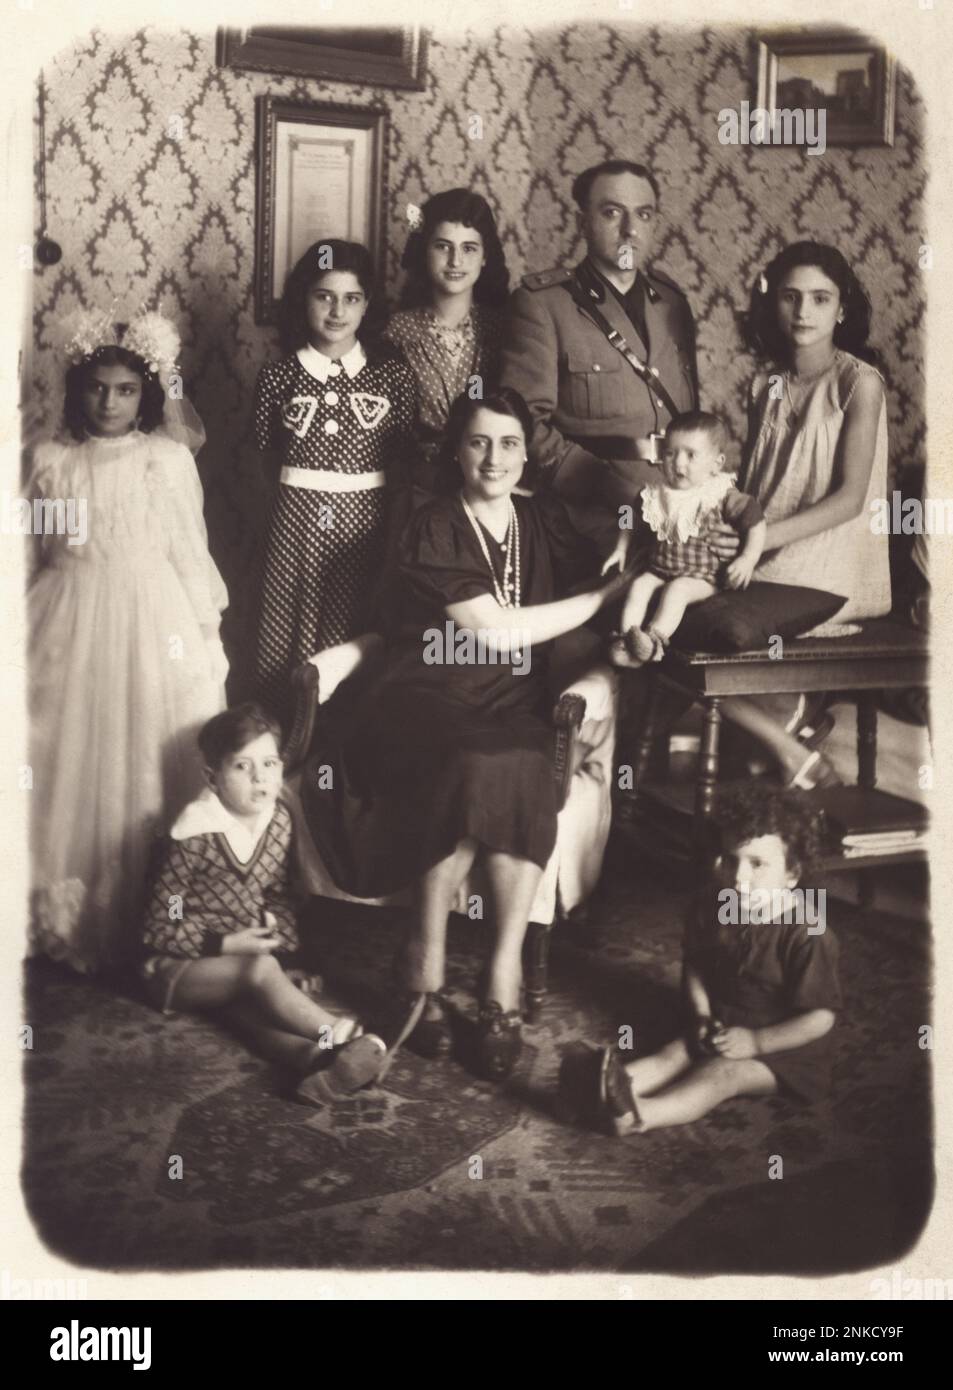 1940 ca , NAPOLI , ITALY : A family with 7 sons - WW 2 - II - WORLD WAR 2nd - SECONDA GUERRA MONDIALE - FASCISMO - FASCISTA - FASCISM - ANNI QUARANTA - 40's - '40 -  FAMILY - FAMIGLIA - FIGLI - figlie - figlio - marito e moglie - portrait - ritratto -   military uniform - uniforme divisa militare  - FOTO STORICHE - HISTORY PHOTOS - STOCK  - ITALY - ITALIA - XX CENTURY - NOVECENTO - CHILD - CHILDREN - bambino - bambini - bambina - fratelli - sorelle - sisters - brothers  - INCREMENTO DEMOGRAFICO © Archivio GBB / Stock Photo